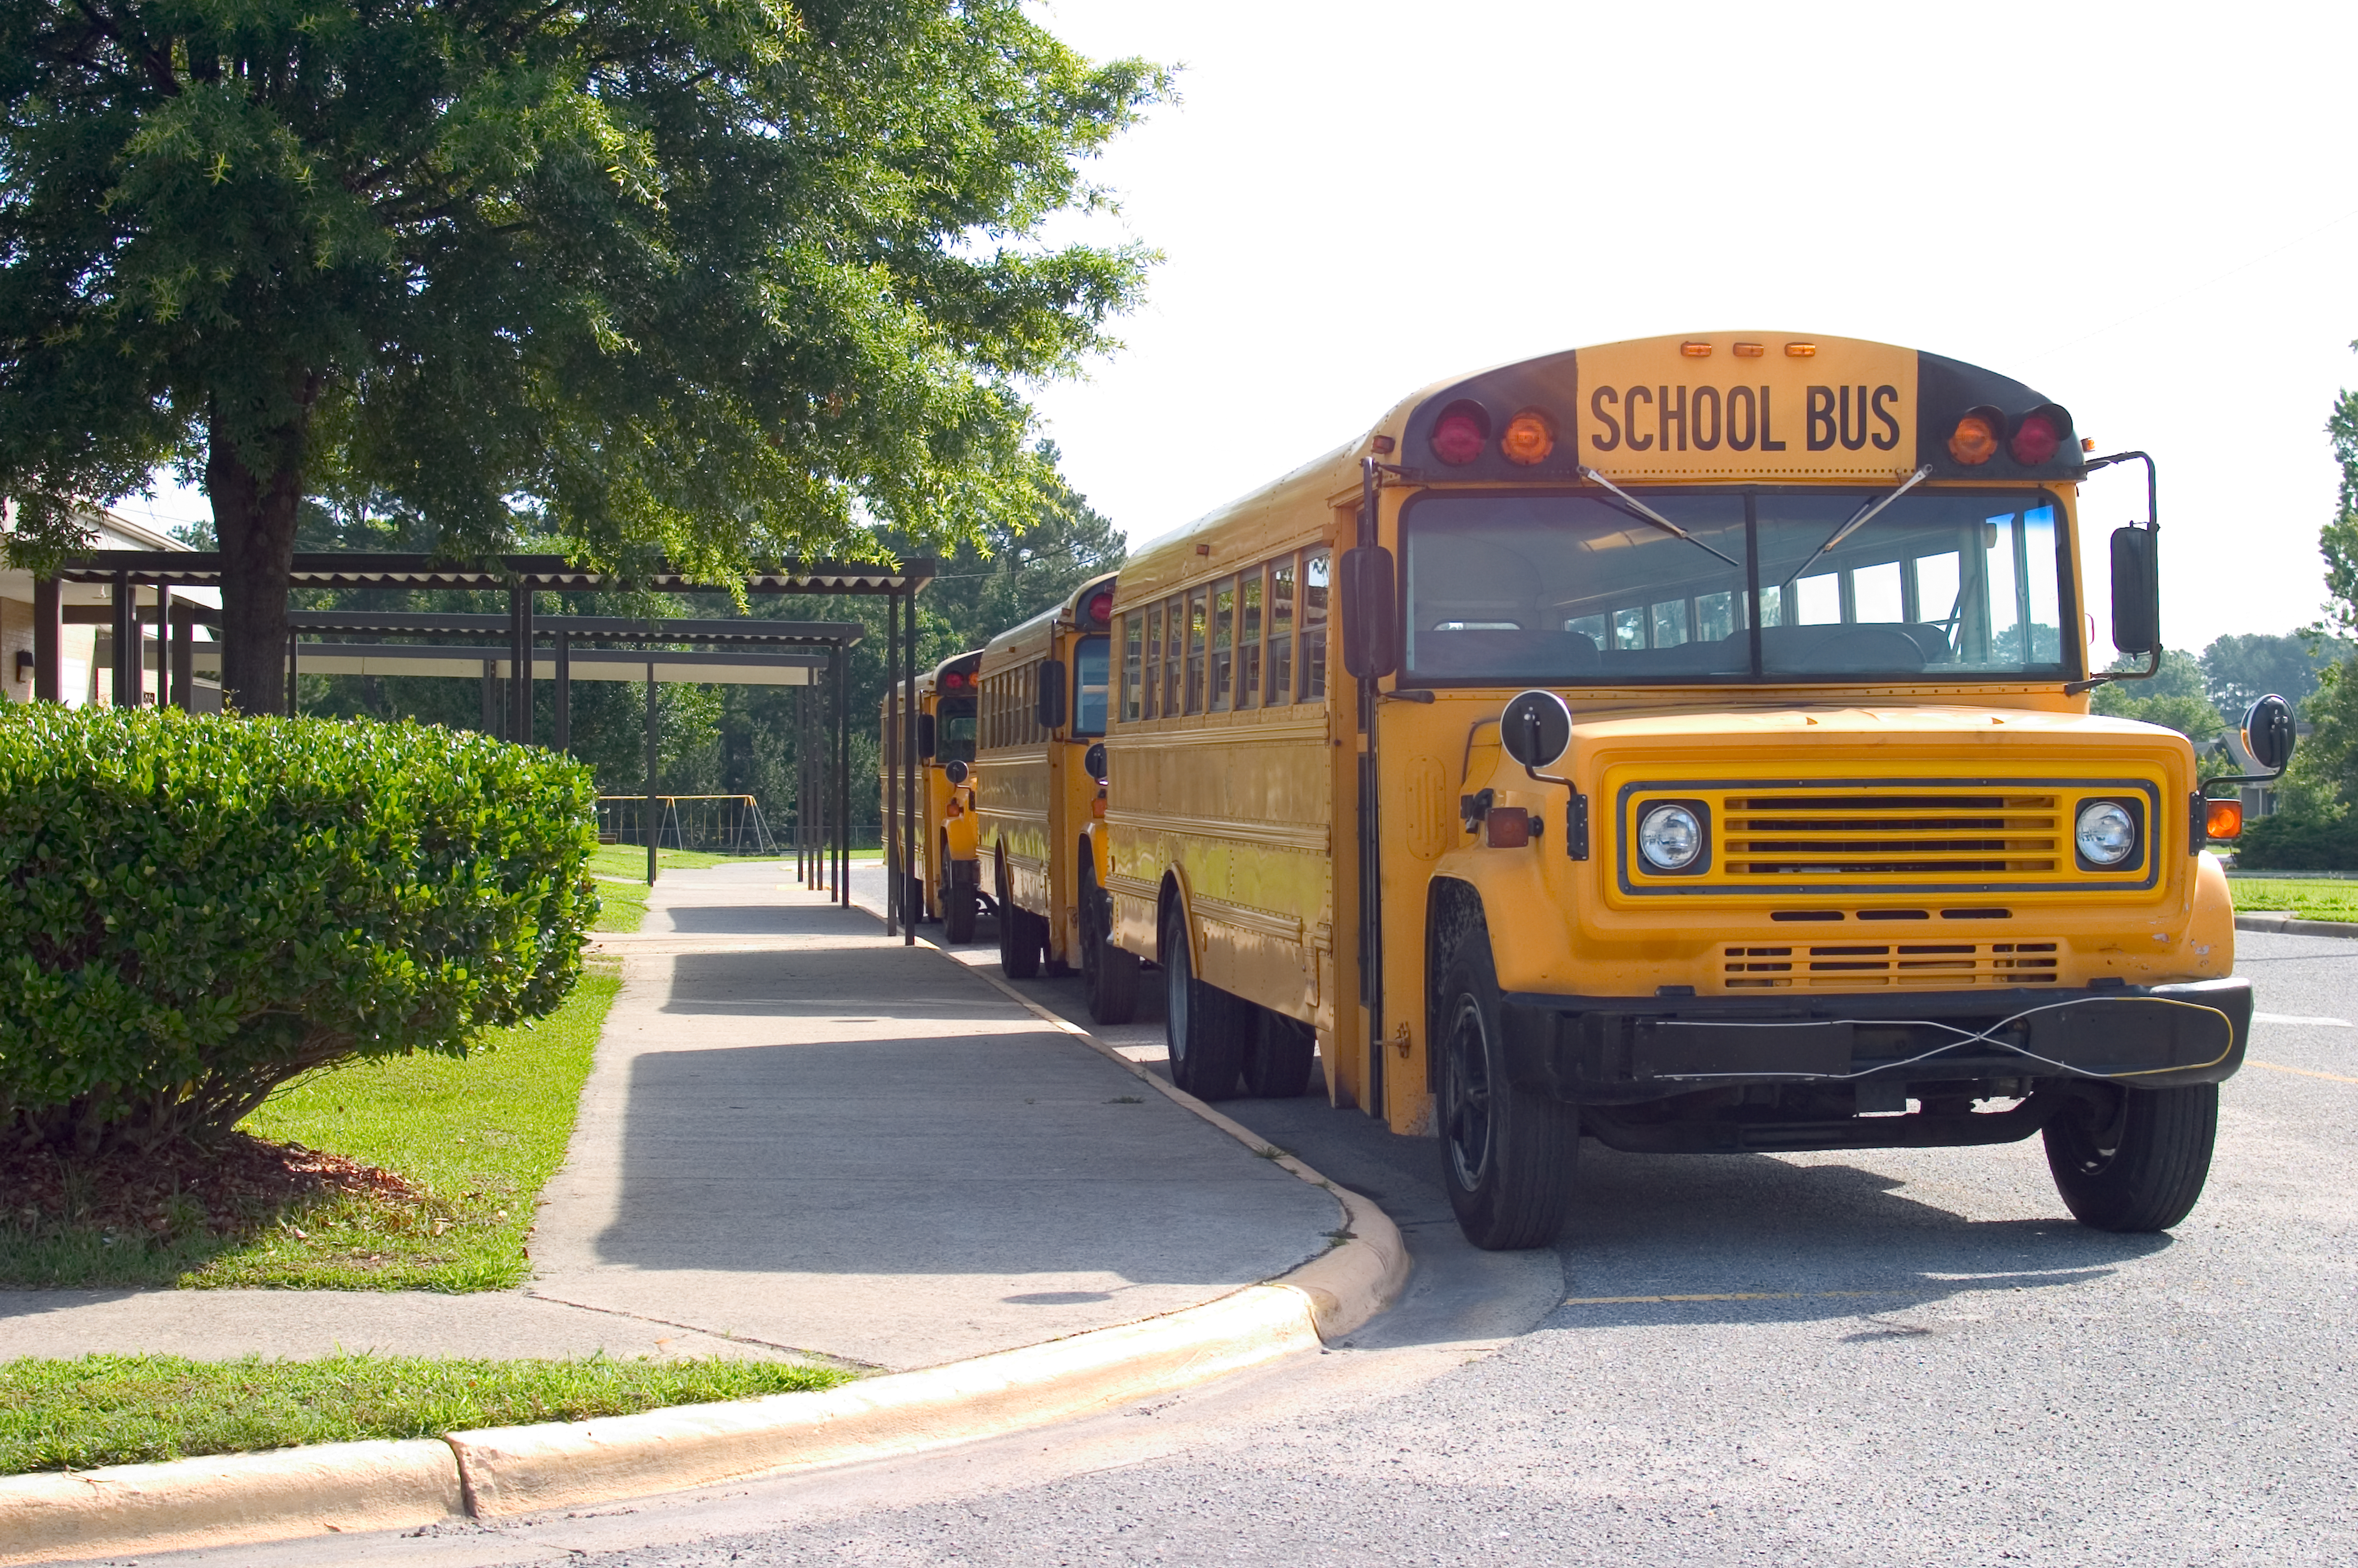 Line of school buses in front of school